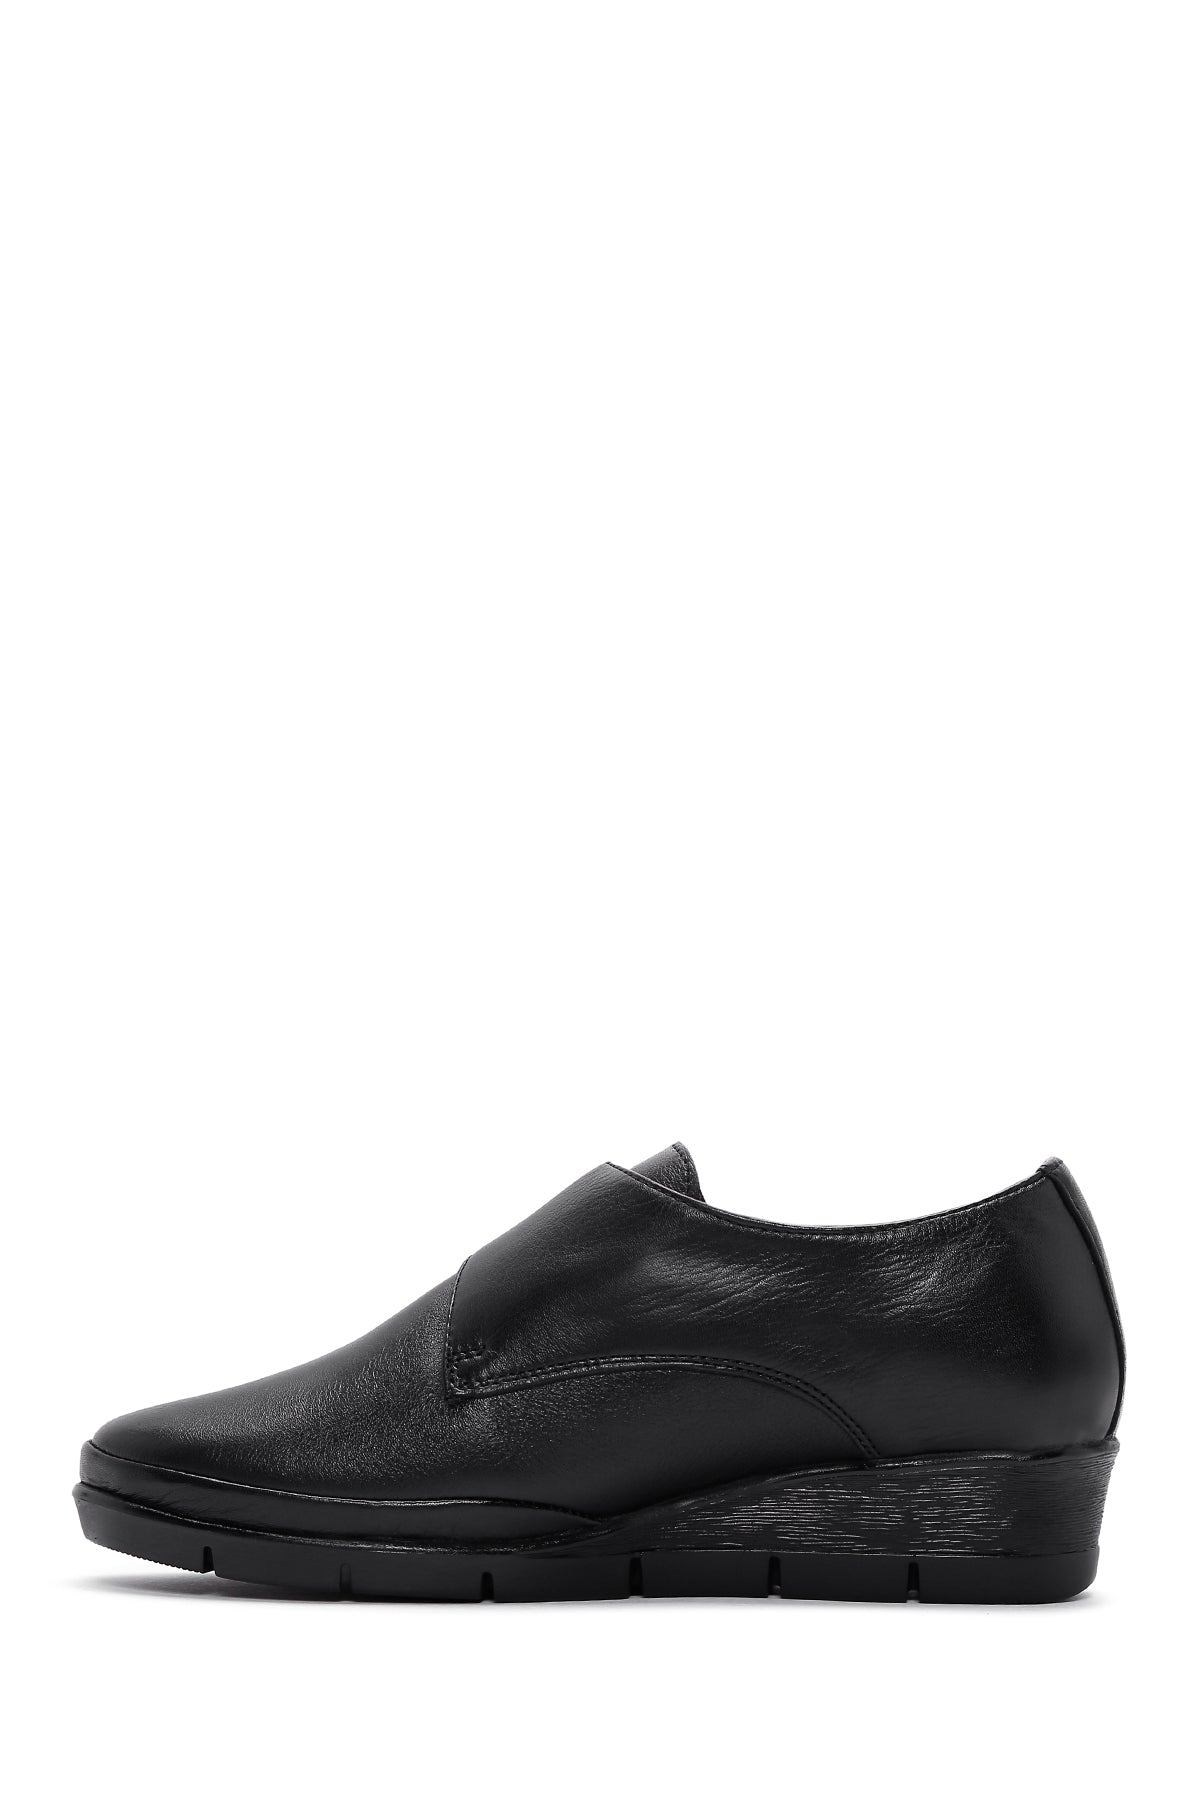 Kadın Siyah Deri Dolgu Topuklu Comfort Ayakkabı